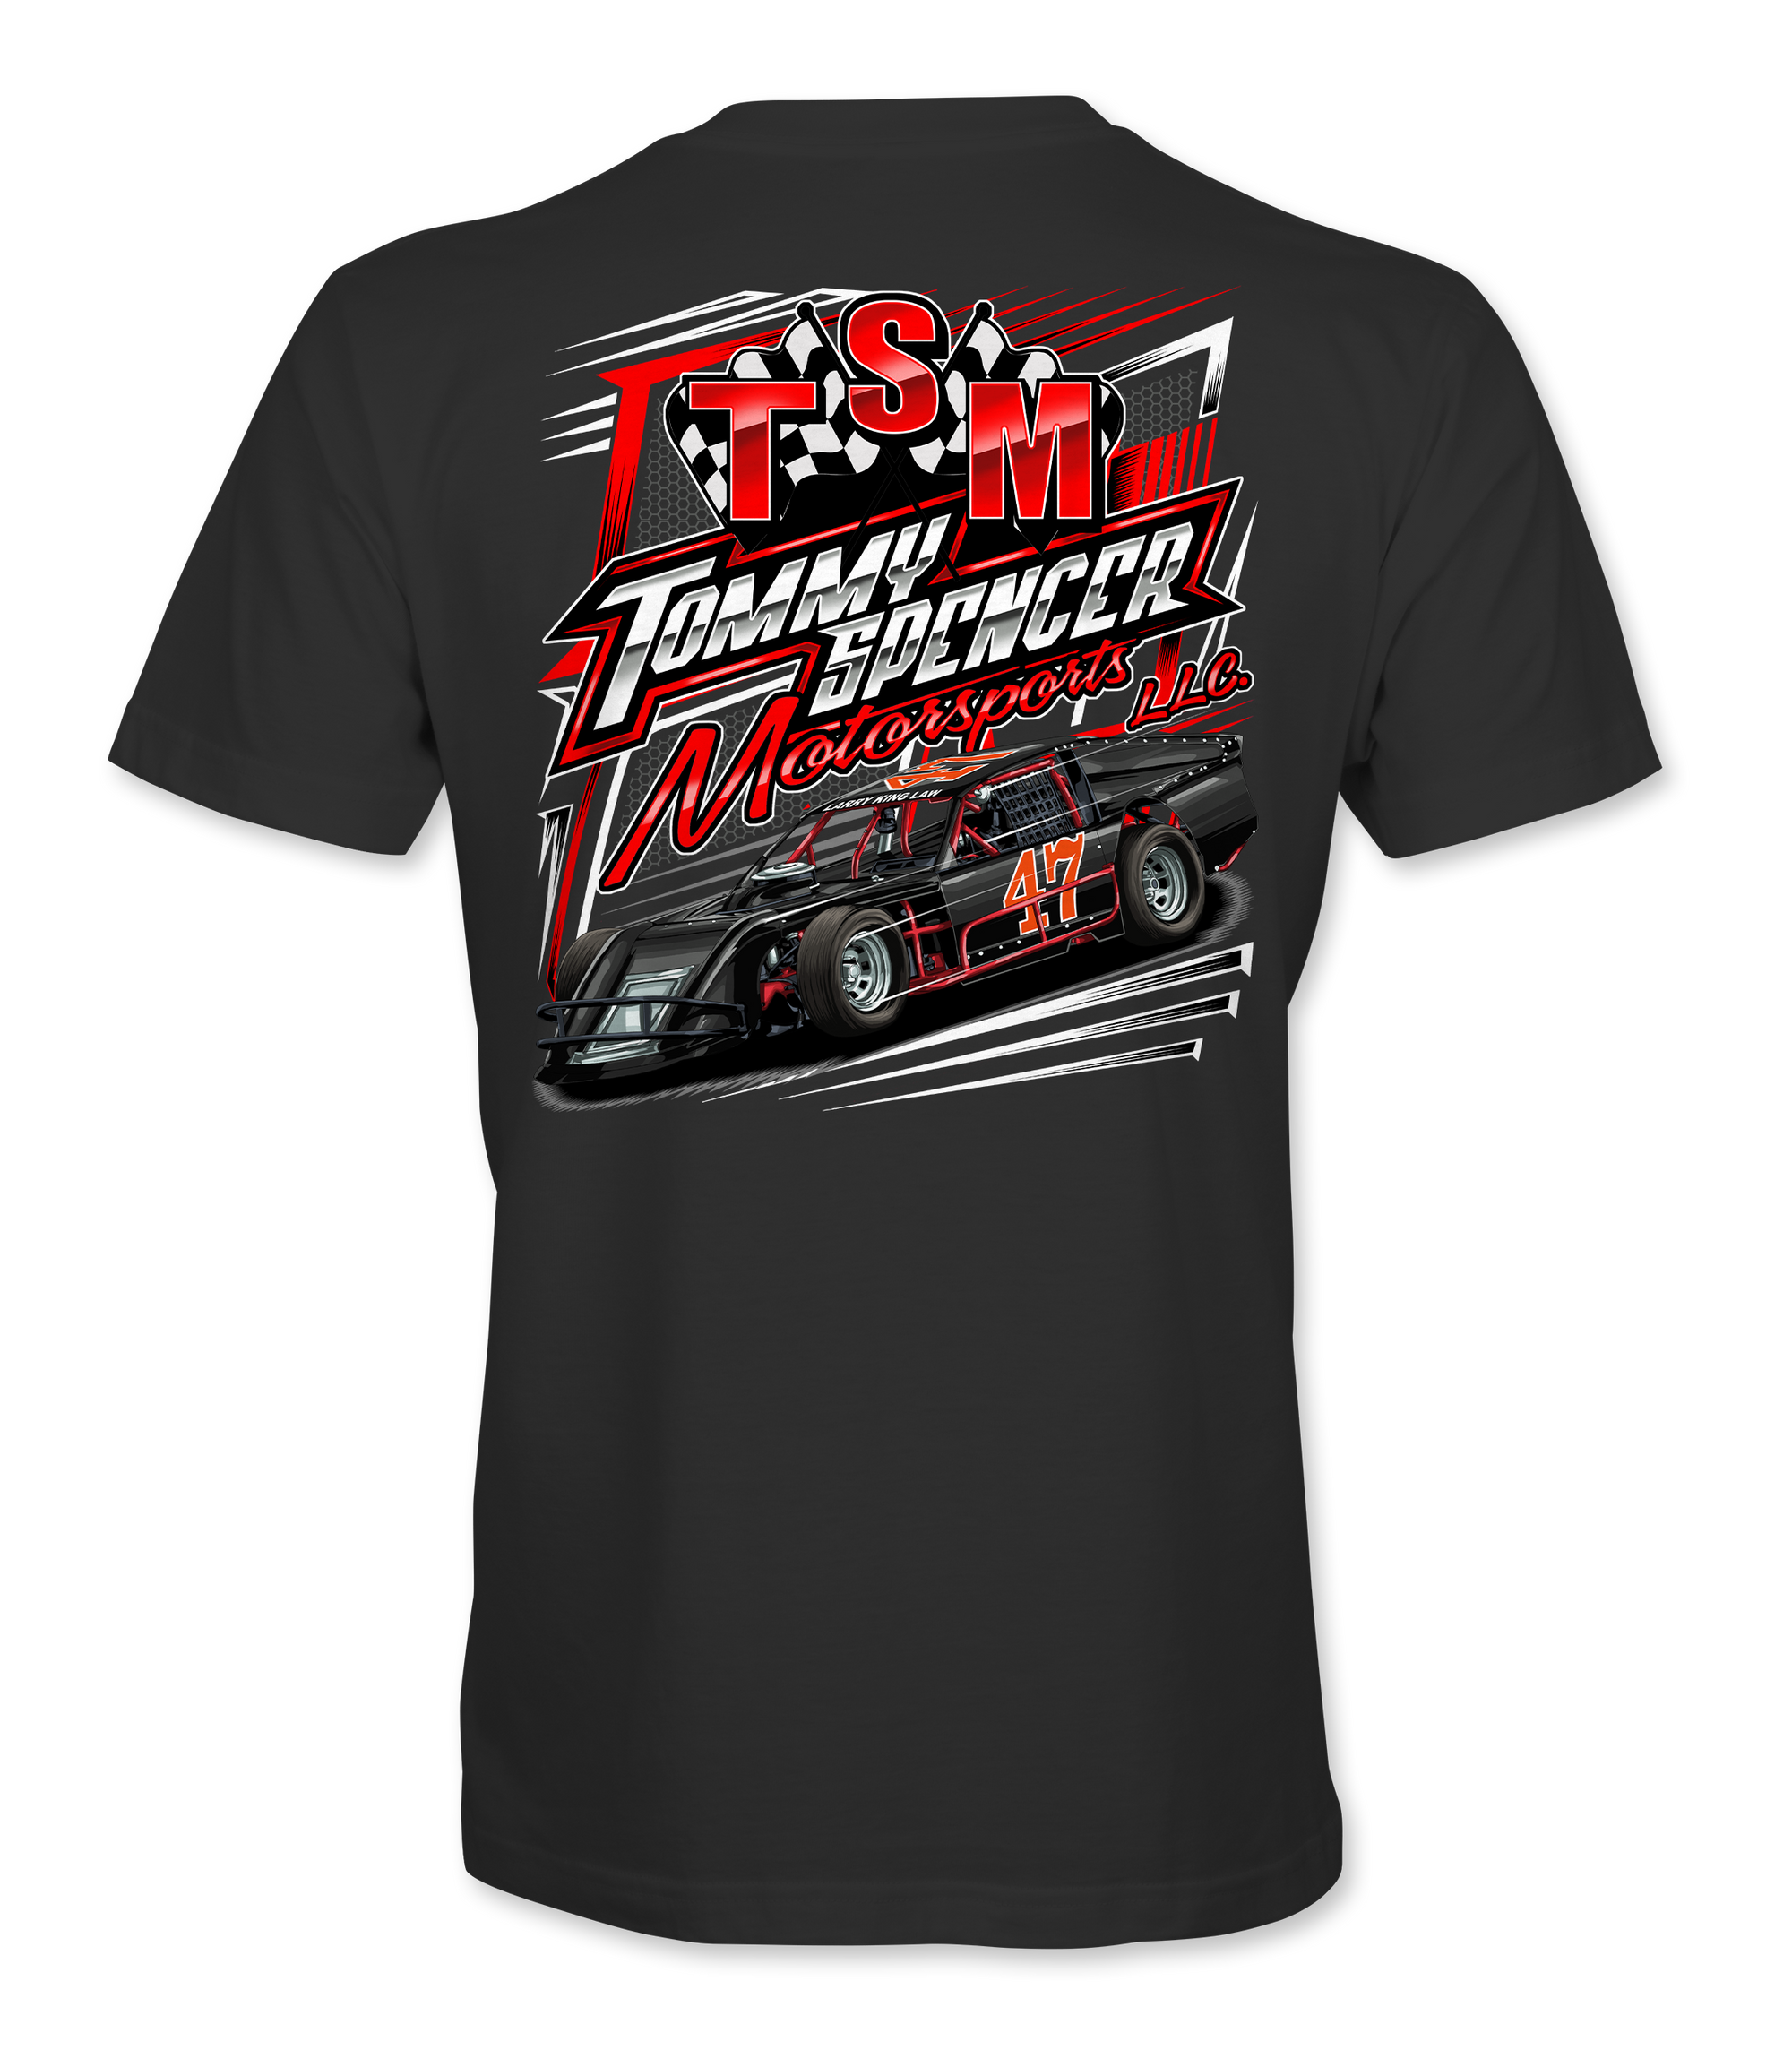 Tommy Spencer Motorsports T-Shirts Design #2 - Black Acid Apparel